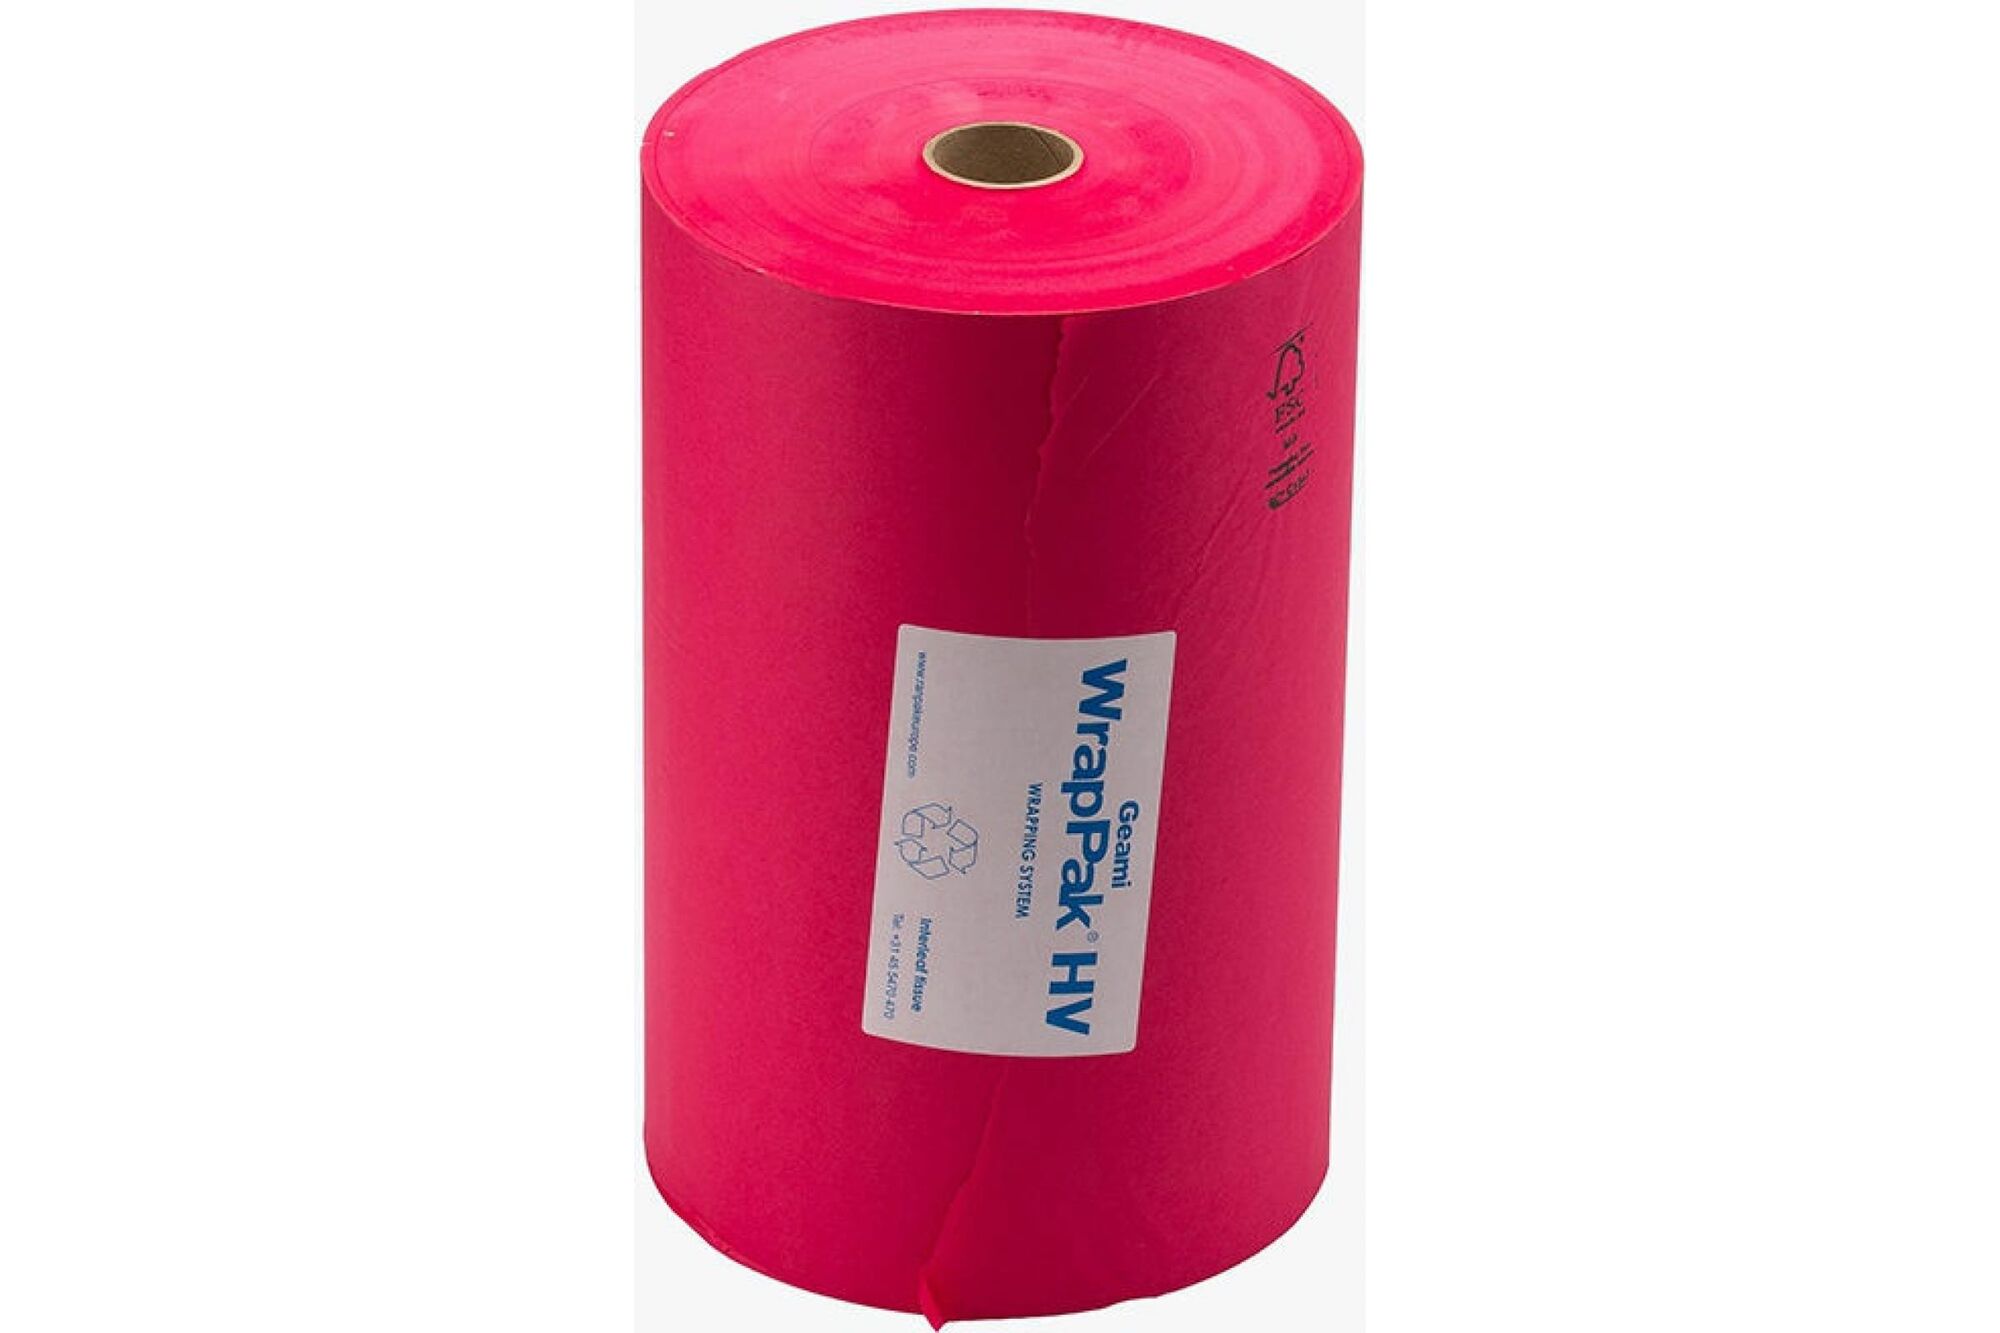 Оберточная бумага Ranpak Geami WrapPak ярко-розовая 840 м в коробке 1184012 1